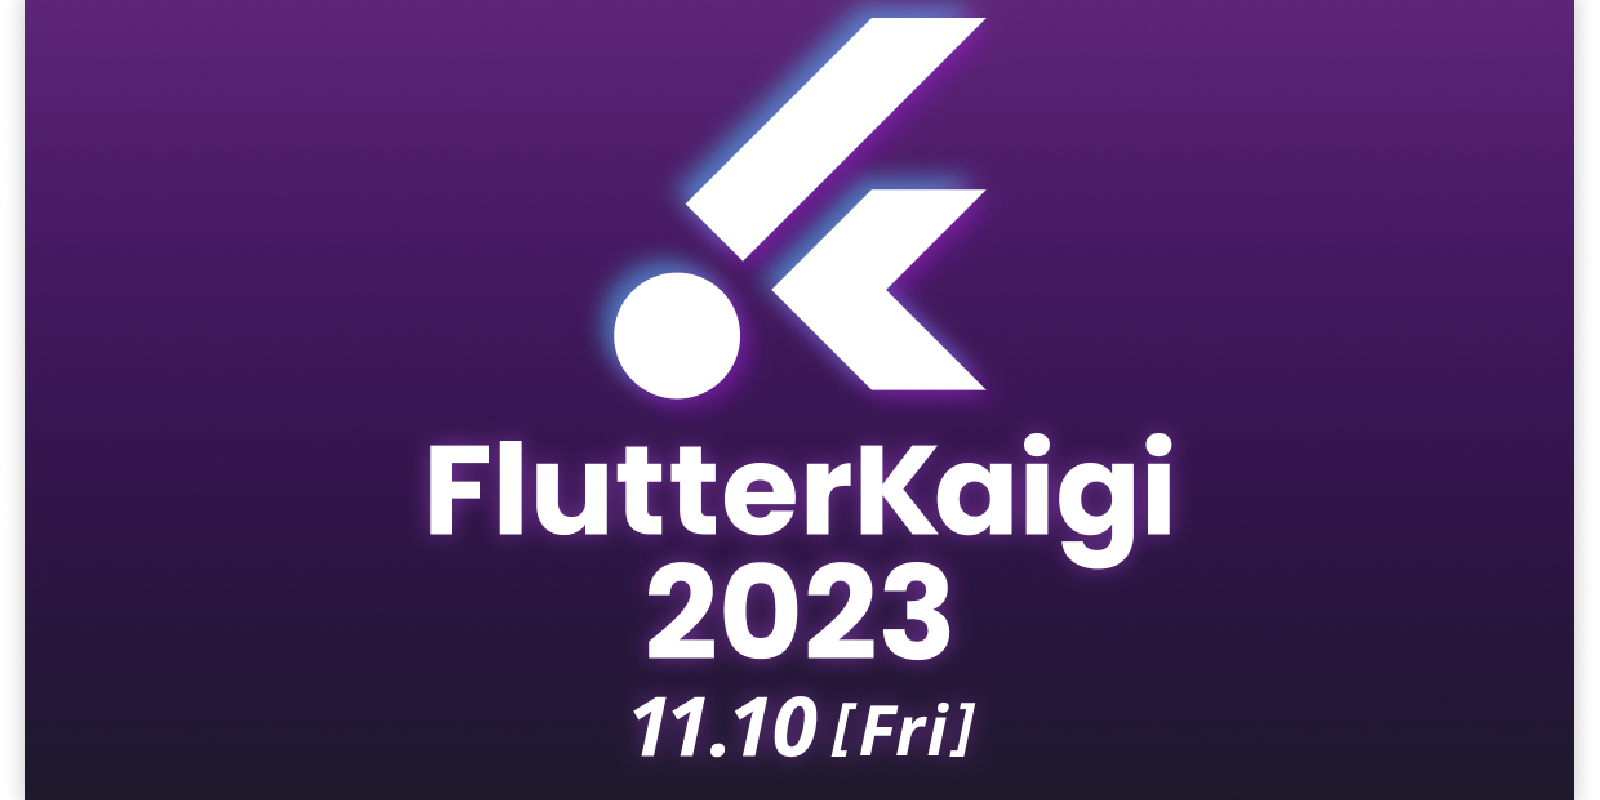 FlutterKaigi 2023